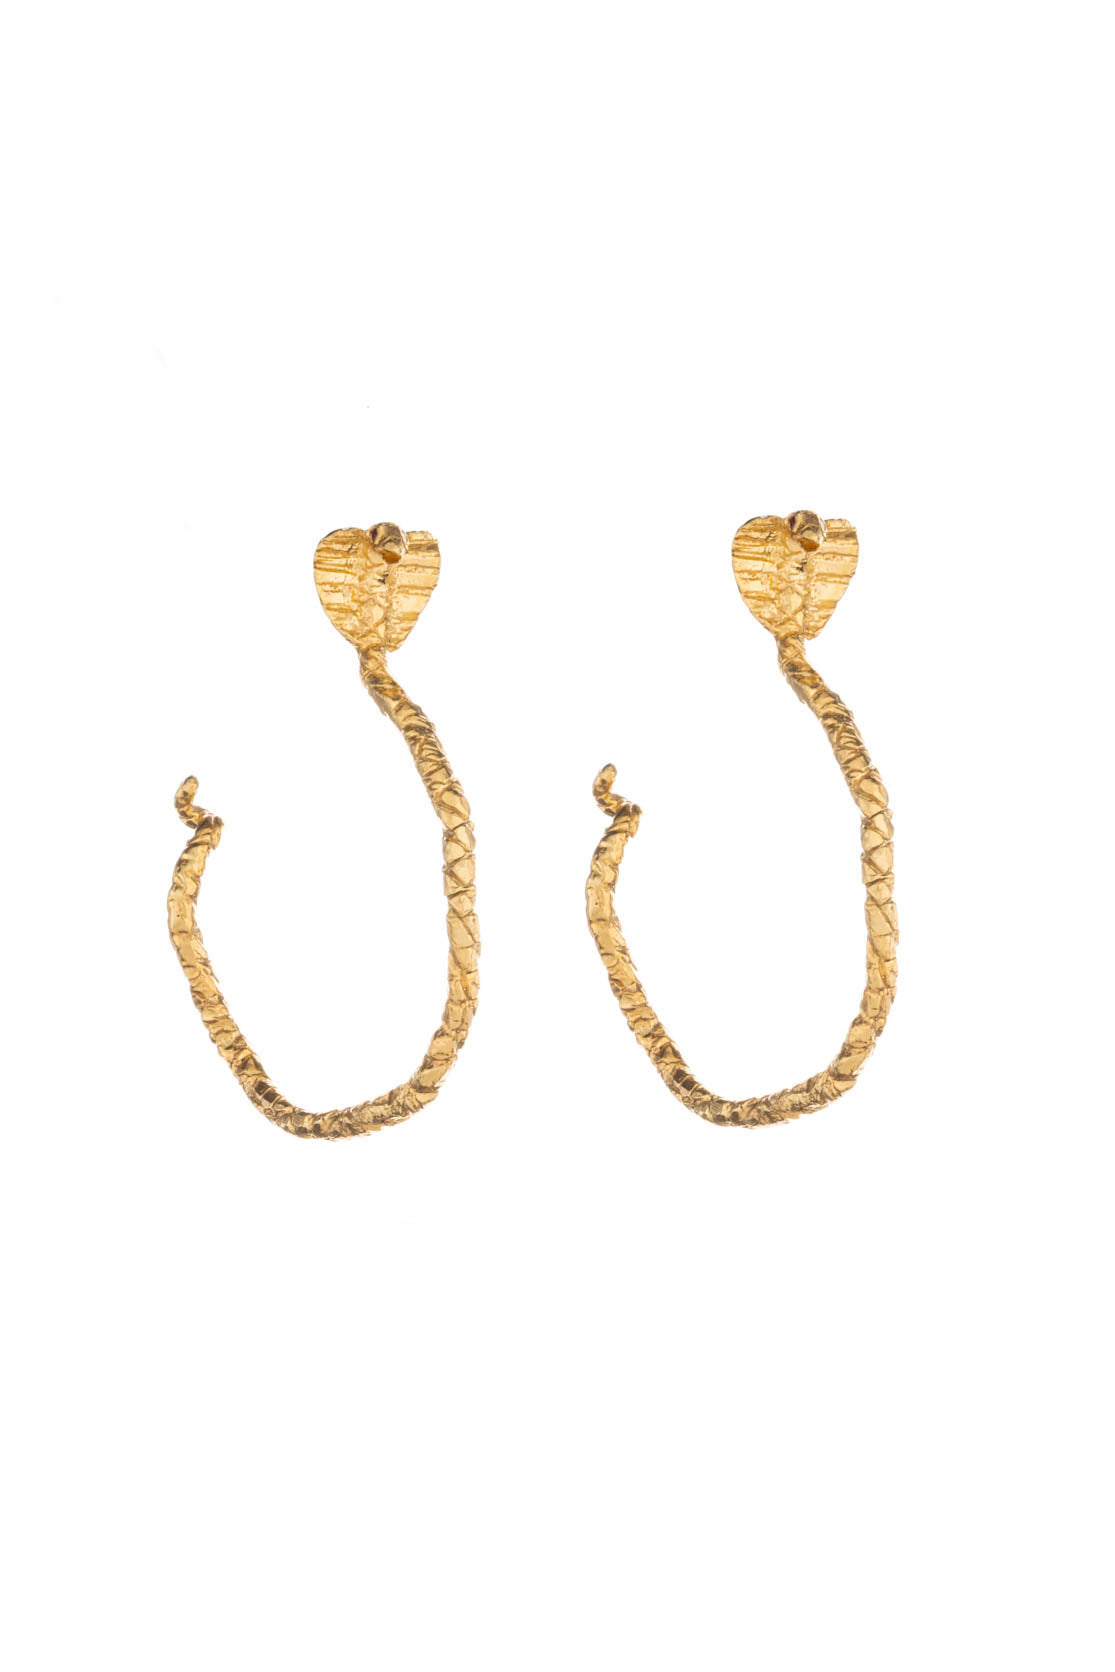 Handmade Snake Hoop Earrings in 22ct Gold Vermeil